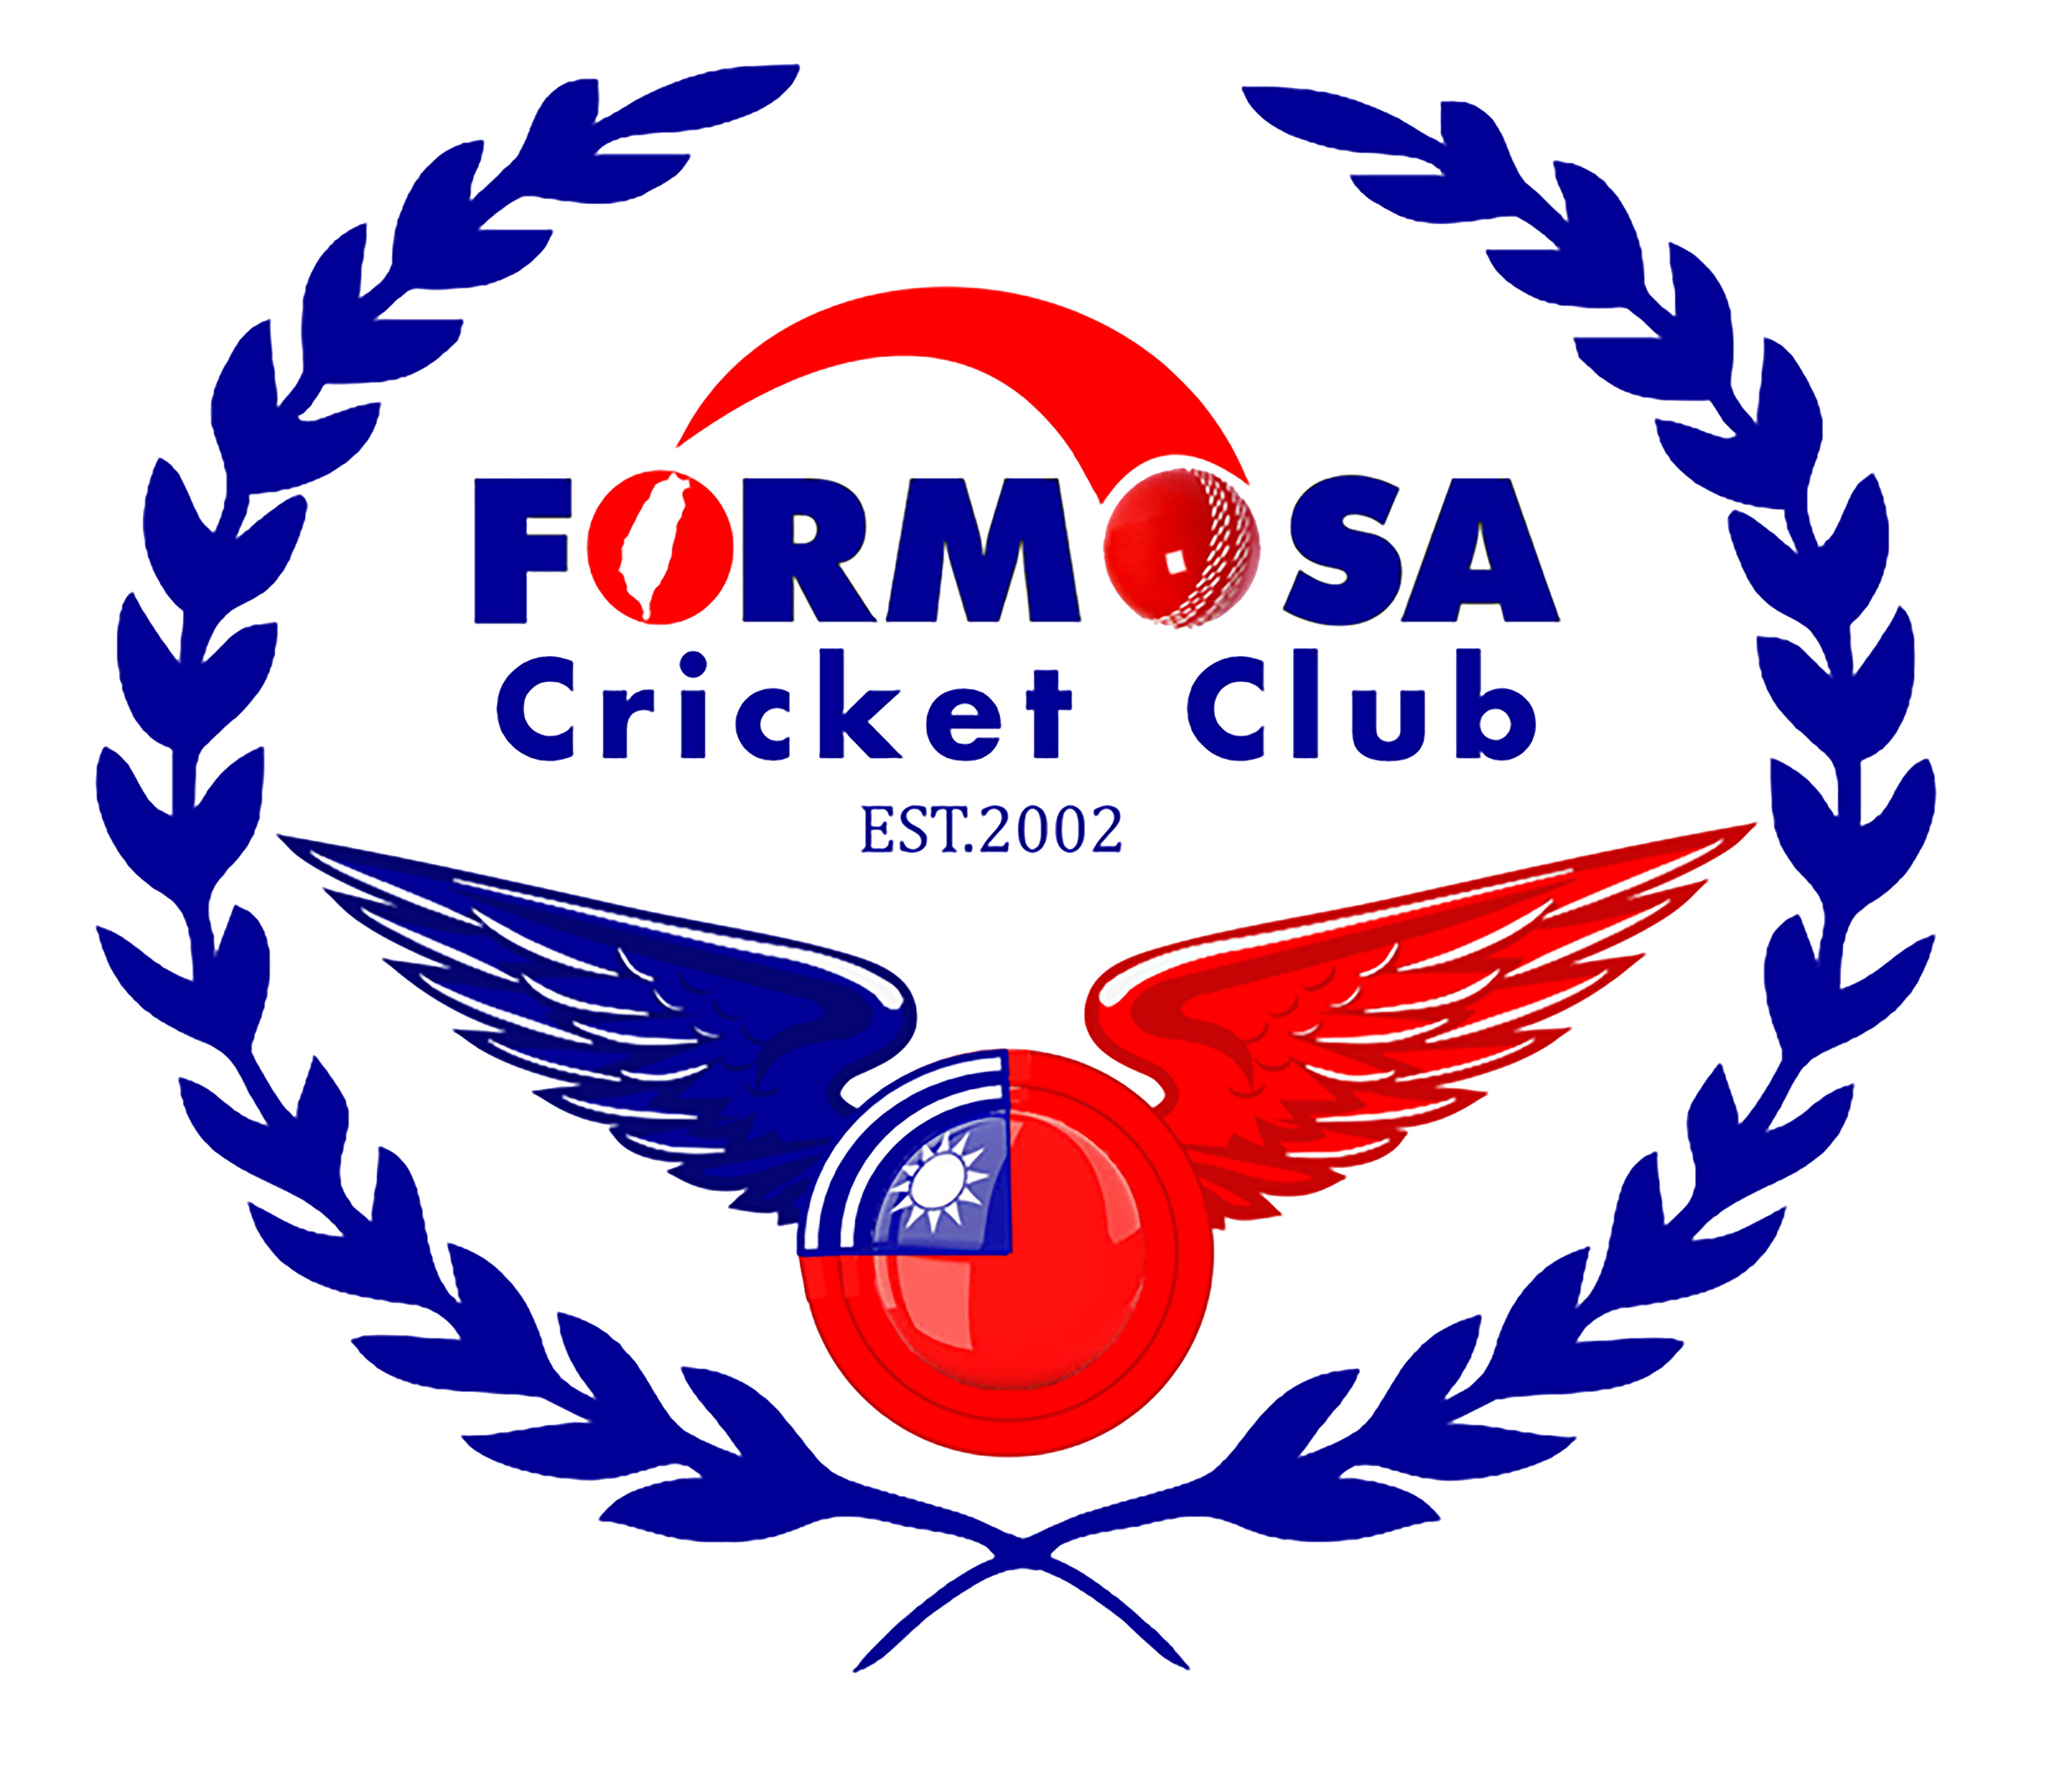 Formosa Cricket Club (FCC) – Taiwan